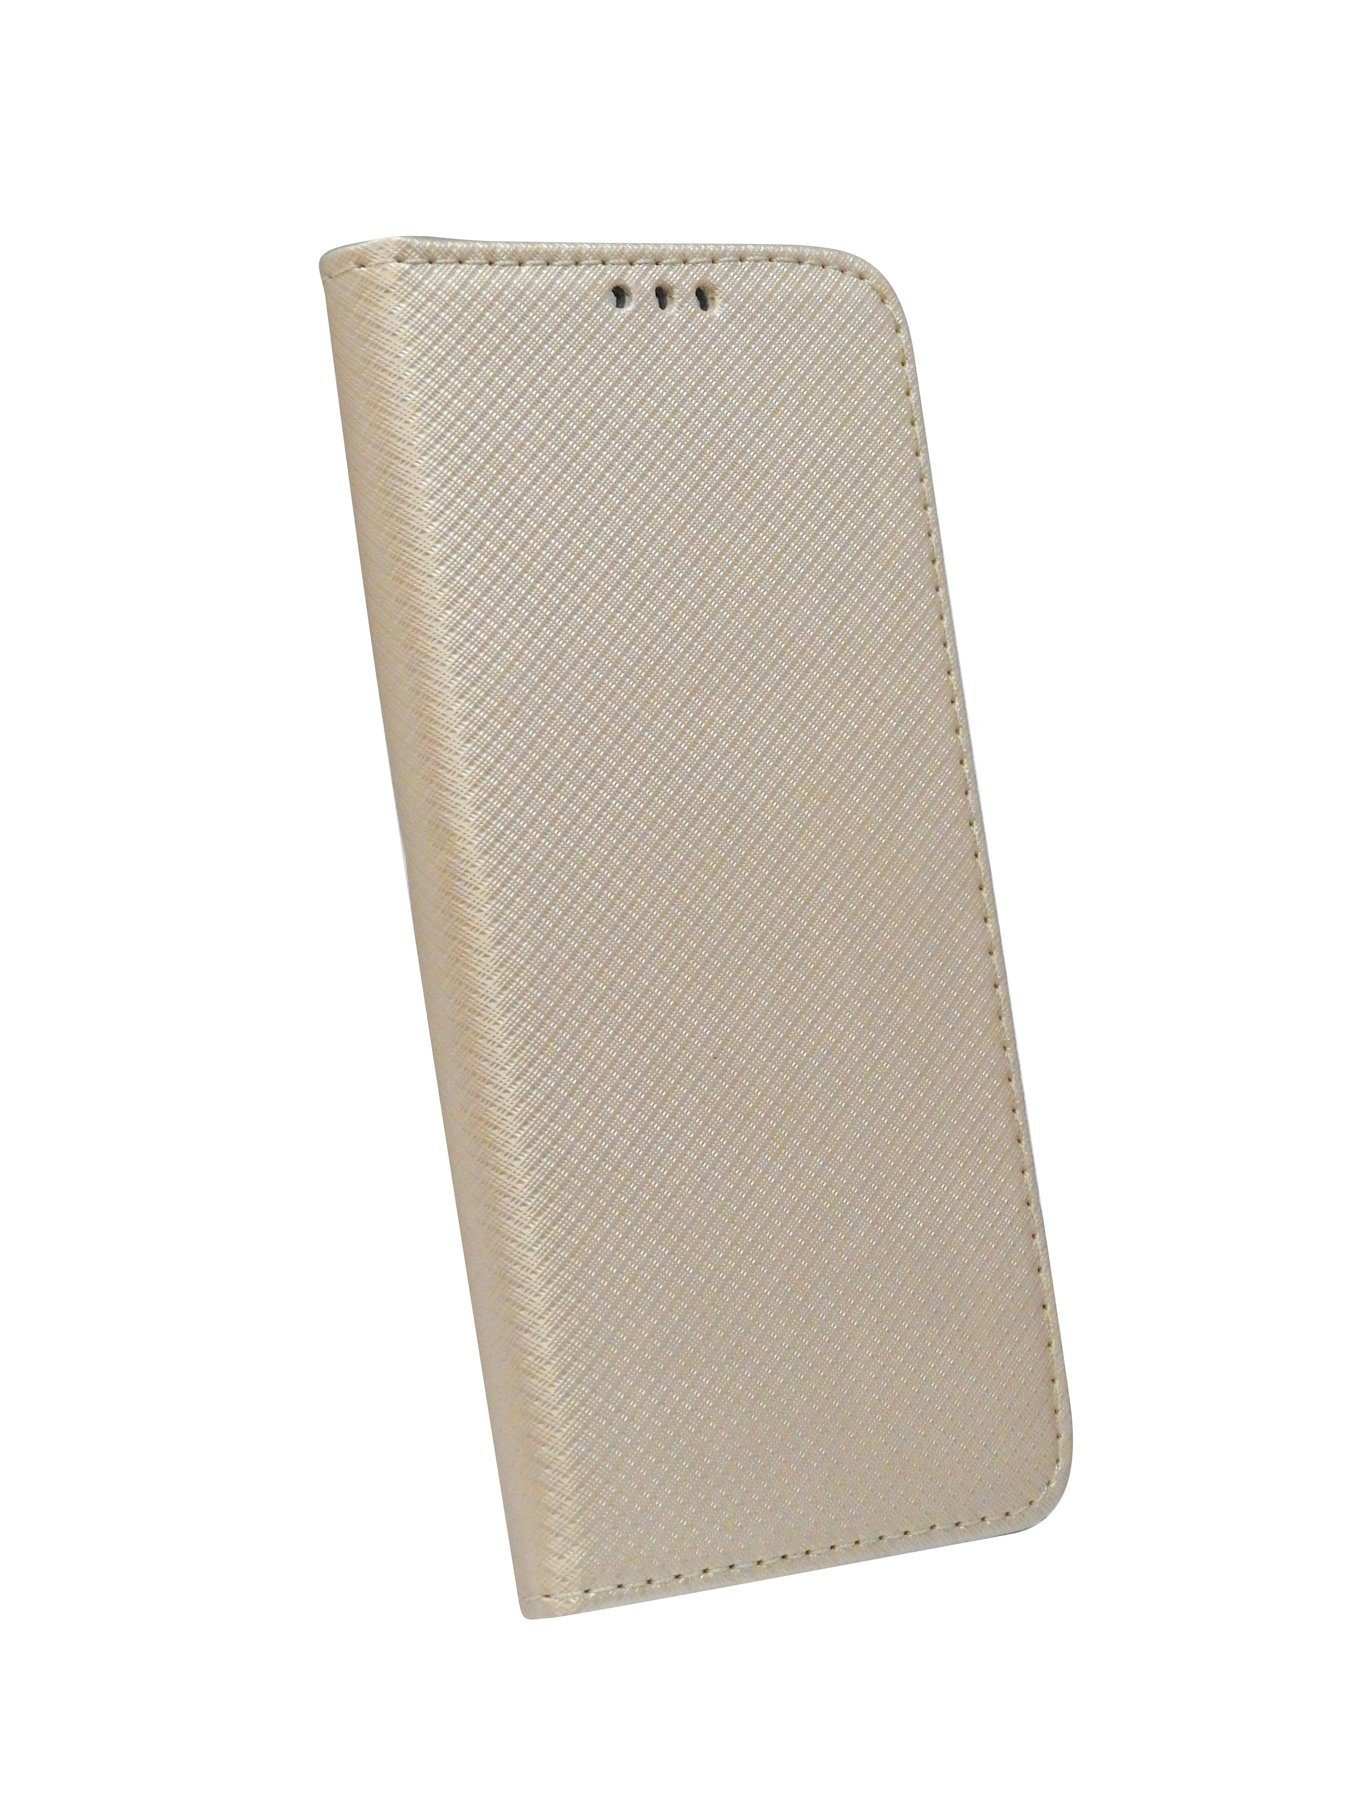 Standfunktion, GALAXY A50 cofi1453 mit SAMSUNG Buch Gold kompatibel Kartenfach (A505F) Tasche Handy Brieftasche Hülle Schutzhülle Etui mit "Smart" Handytasche